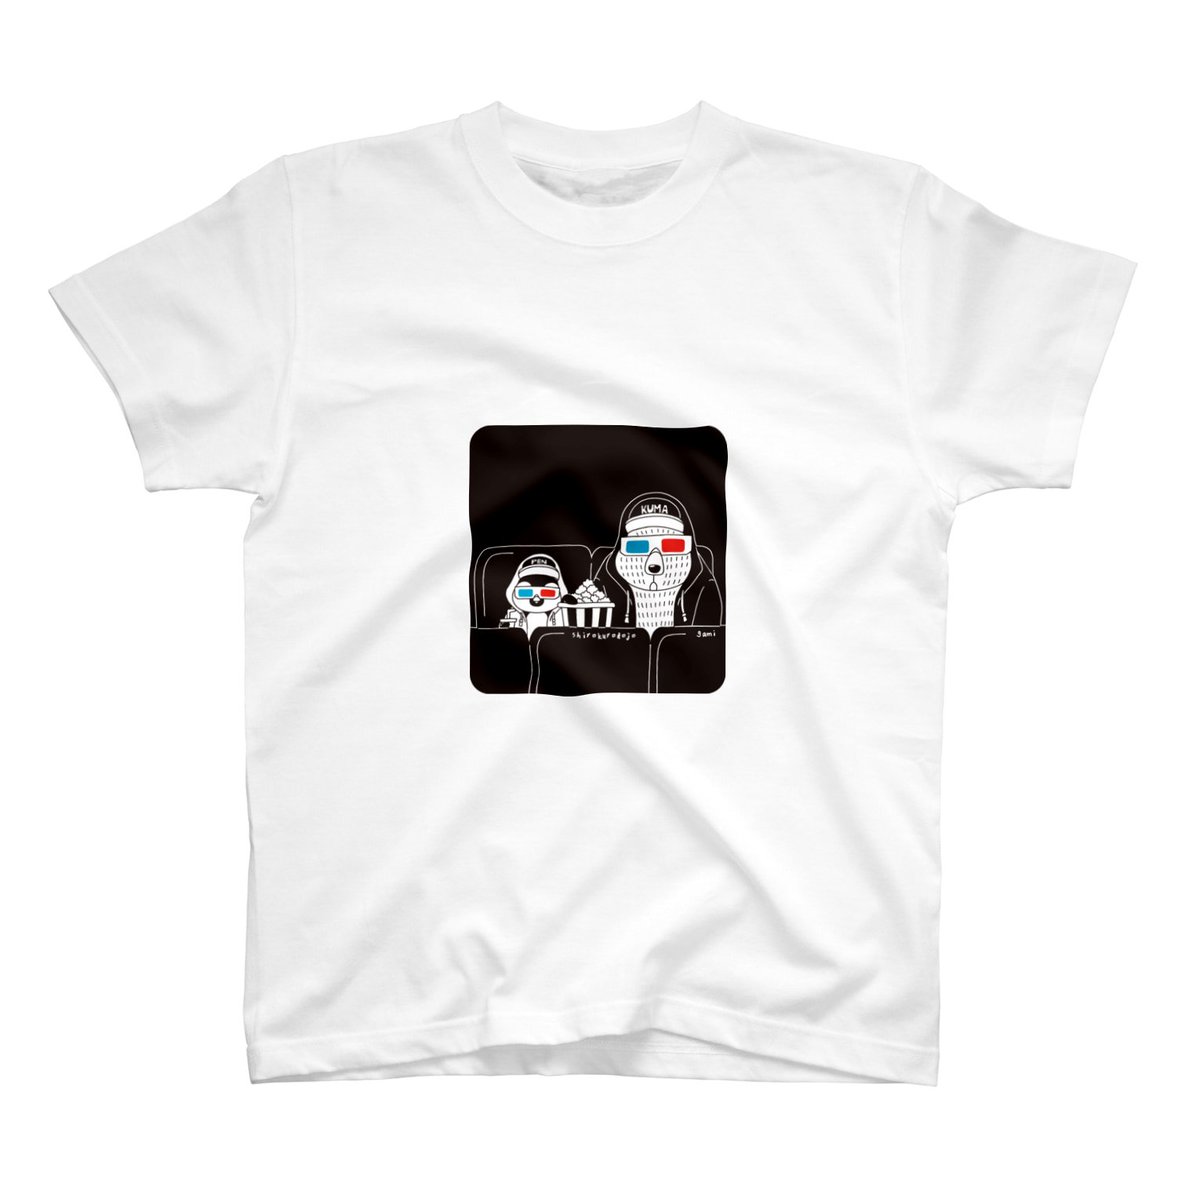 SUZURIさんでTシャツ1000円引きセールなので白黒道場の3DメガネTシャツ作りましたー。よろしくお願いします♪ 
https://t.co/W6TVEZ4OLg
#SUZURI 